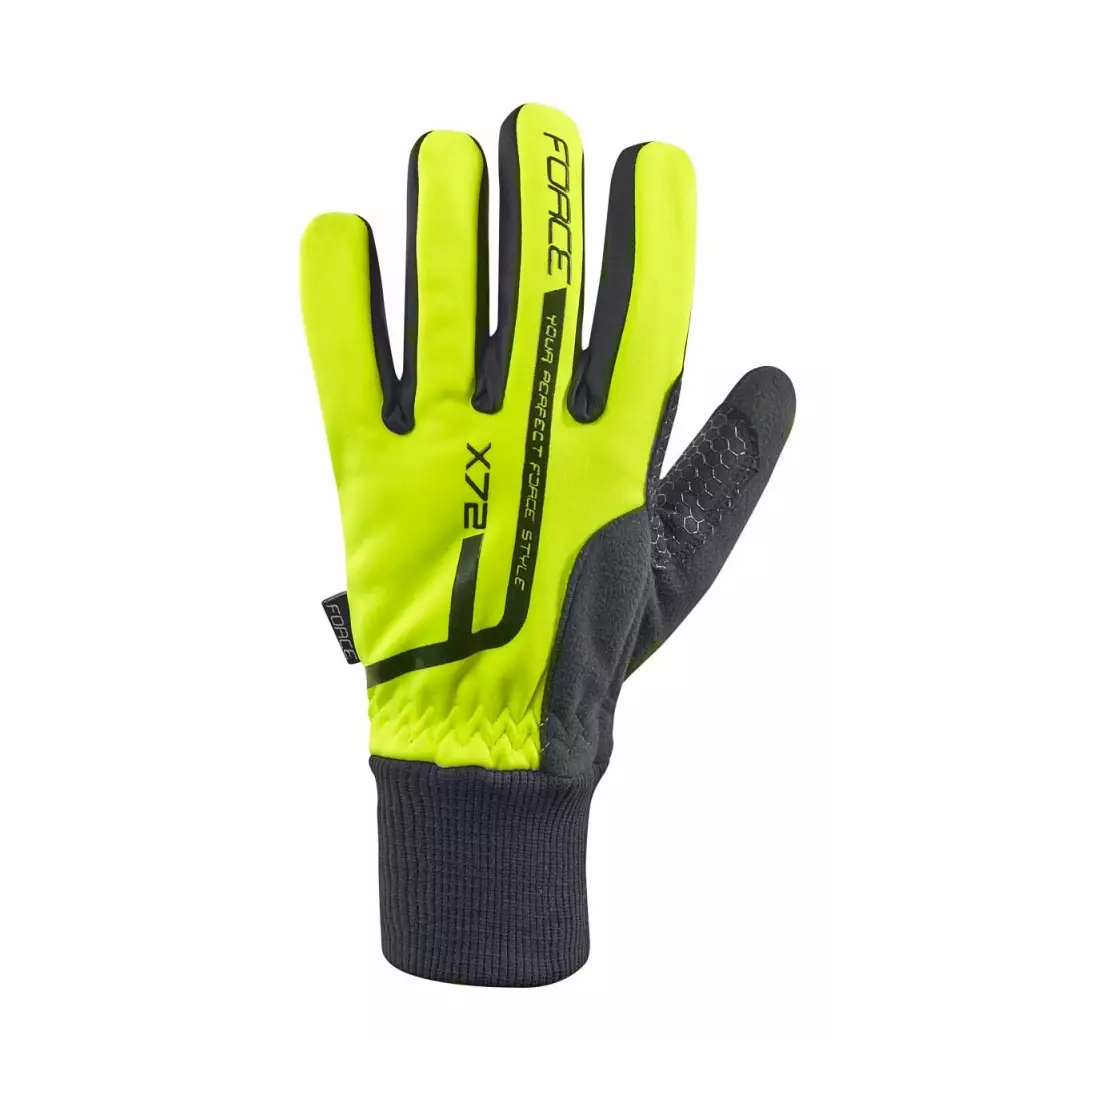 FORCE X72 mănuși de iarnă pentru ciclism fluor galben